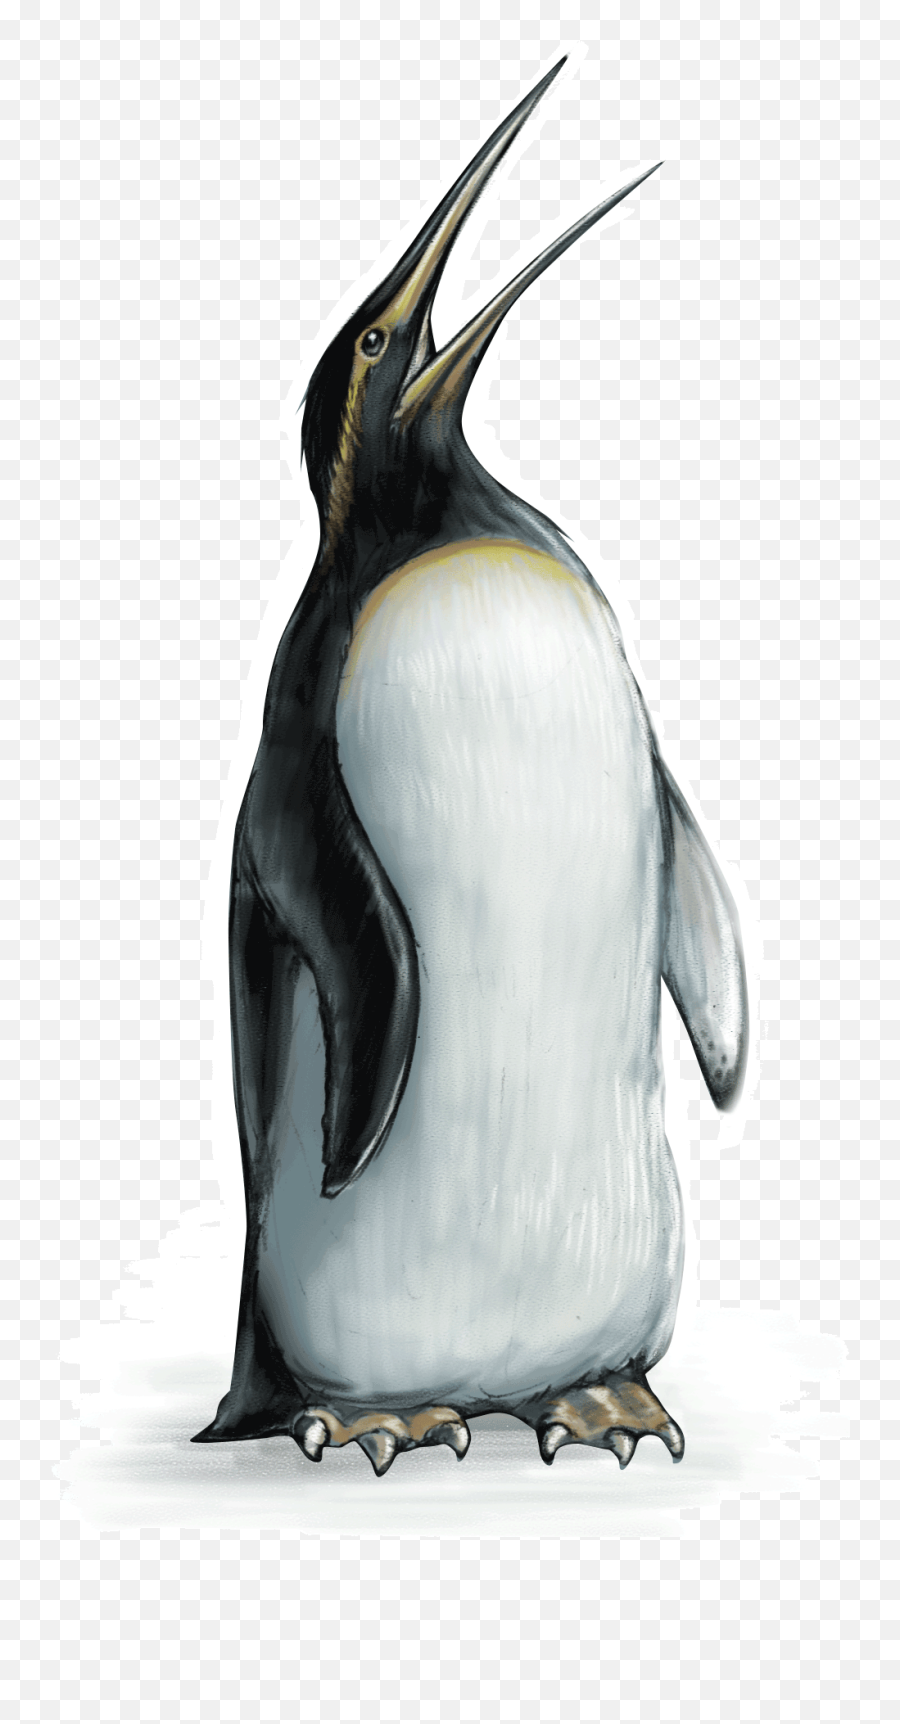 Penguin - Emperor Penguin Full Size Png Download Seekpng Emperor Penguin Transparent,Emperor Palpatine Png